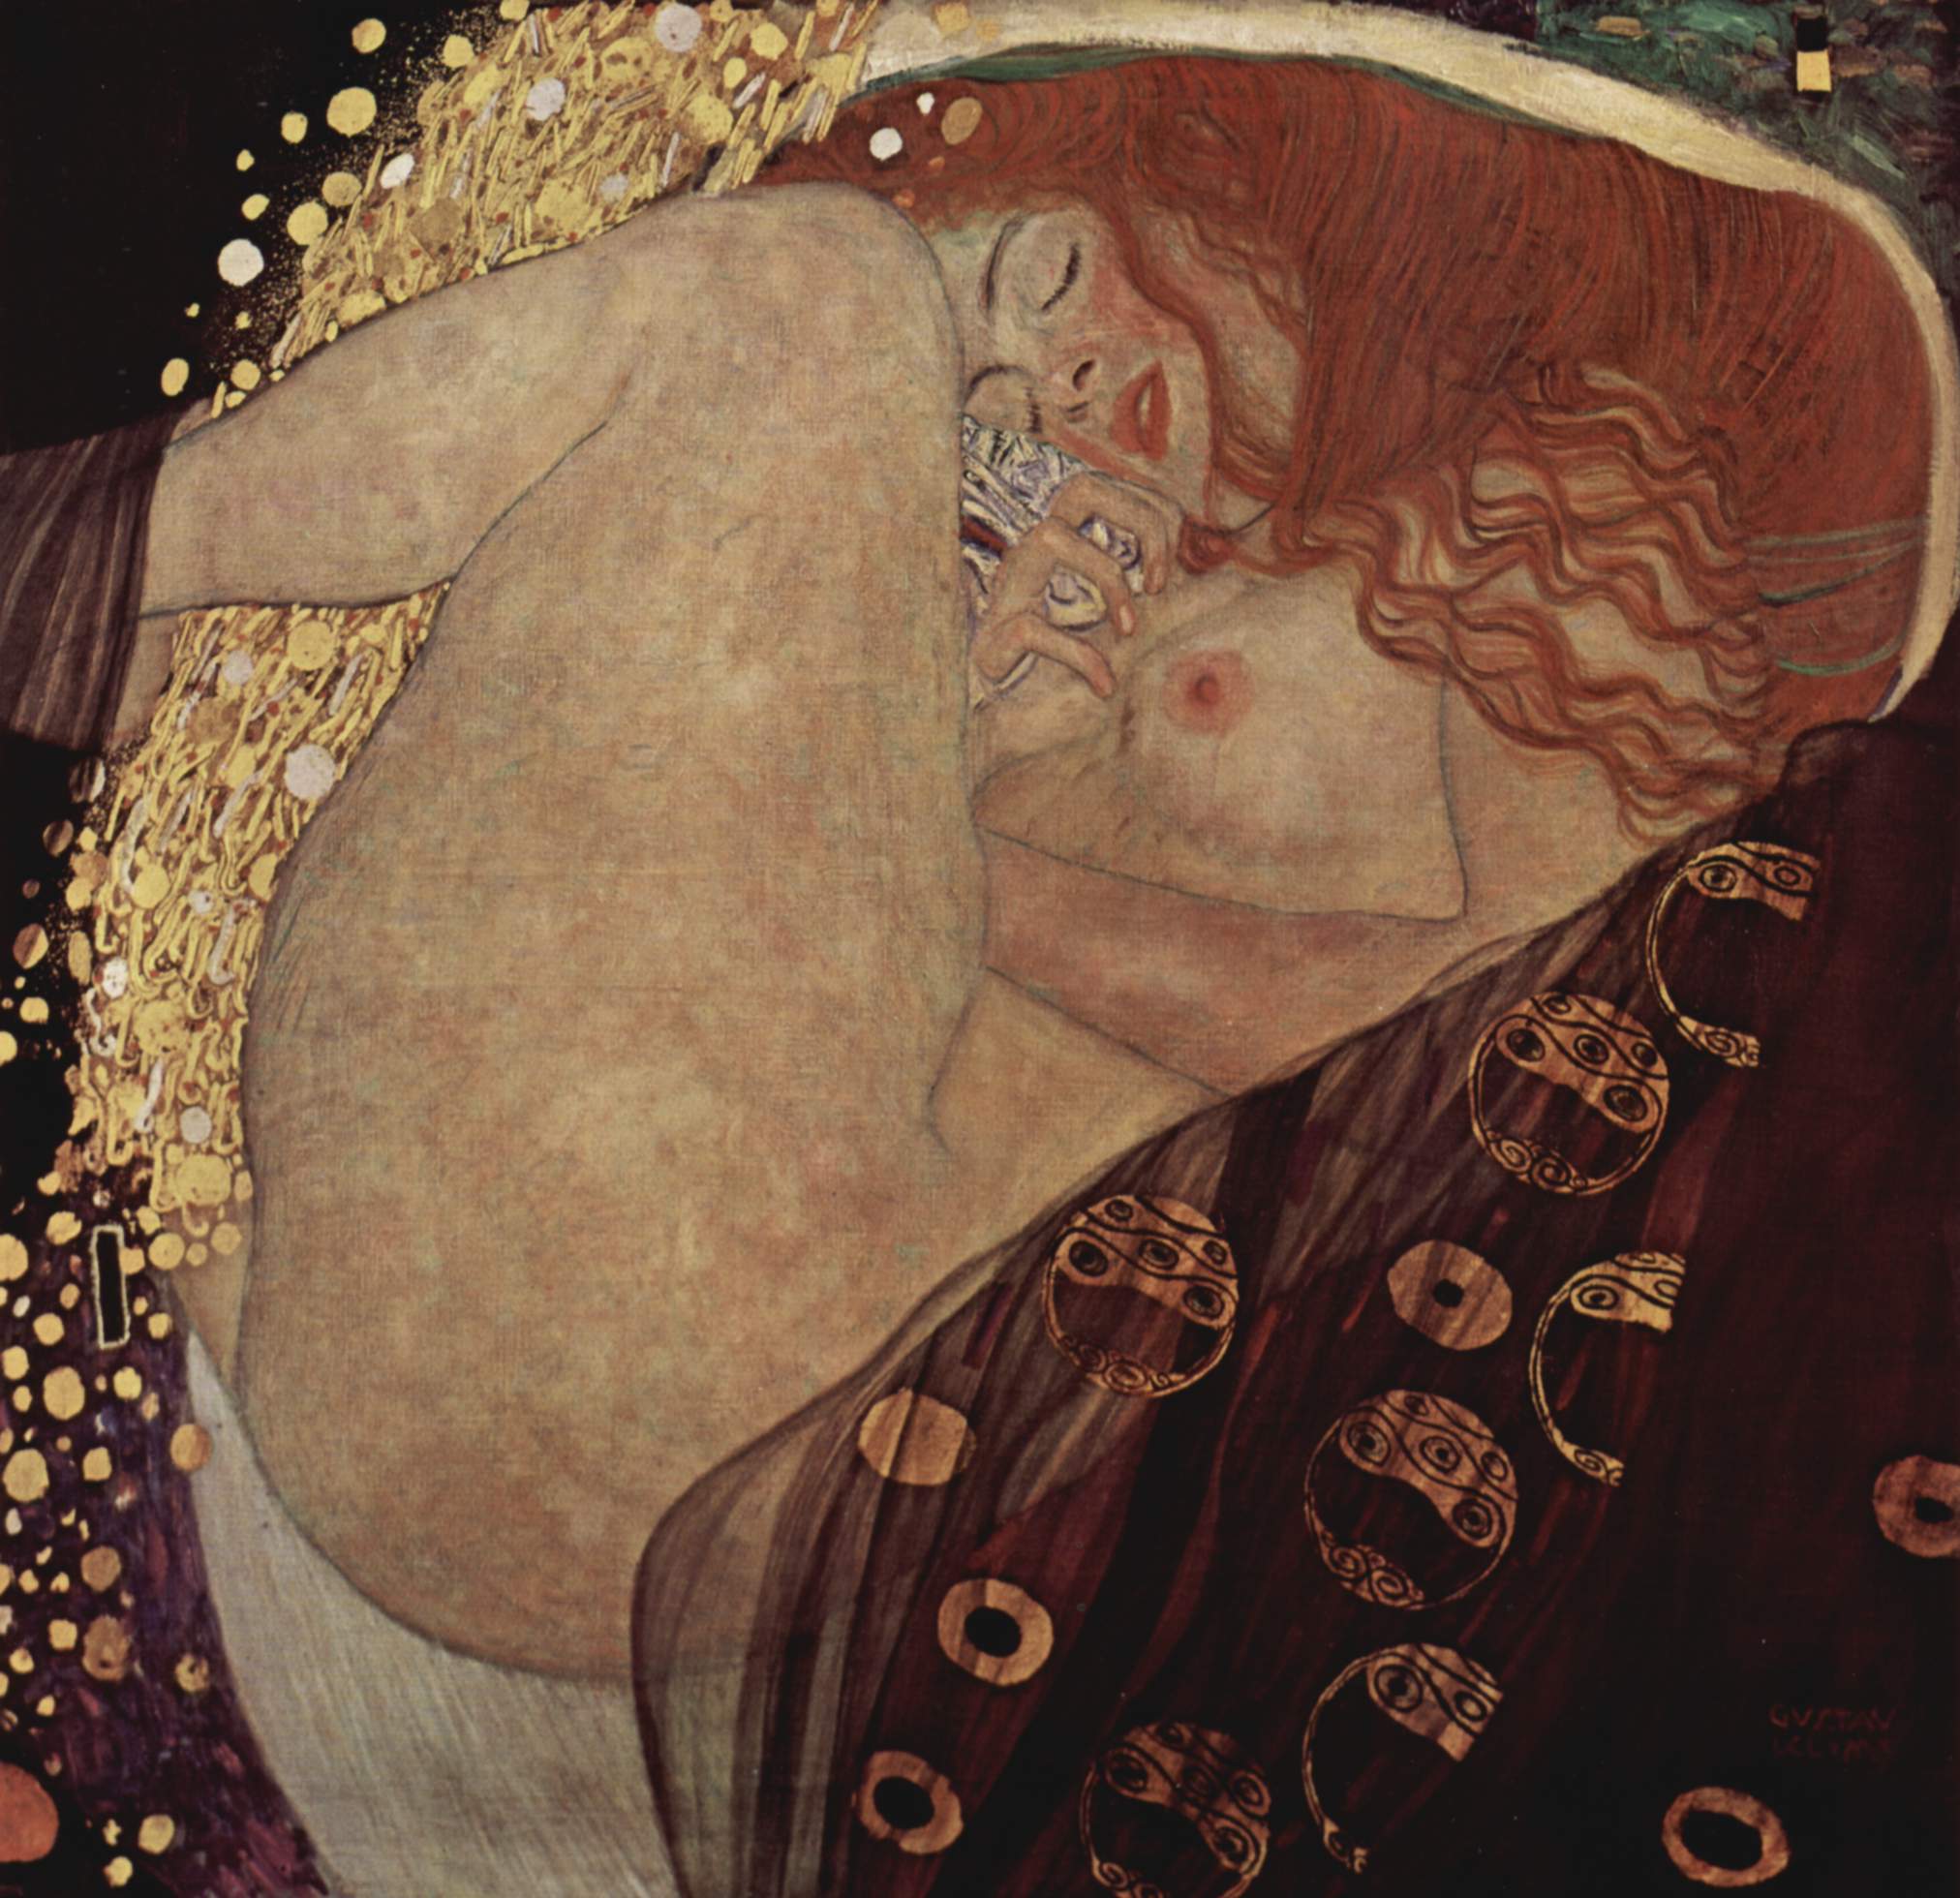 Danae by Gustav Klimt - 1908 - 77 cm x 83 cm özel koleksiyon